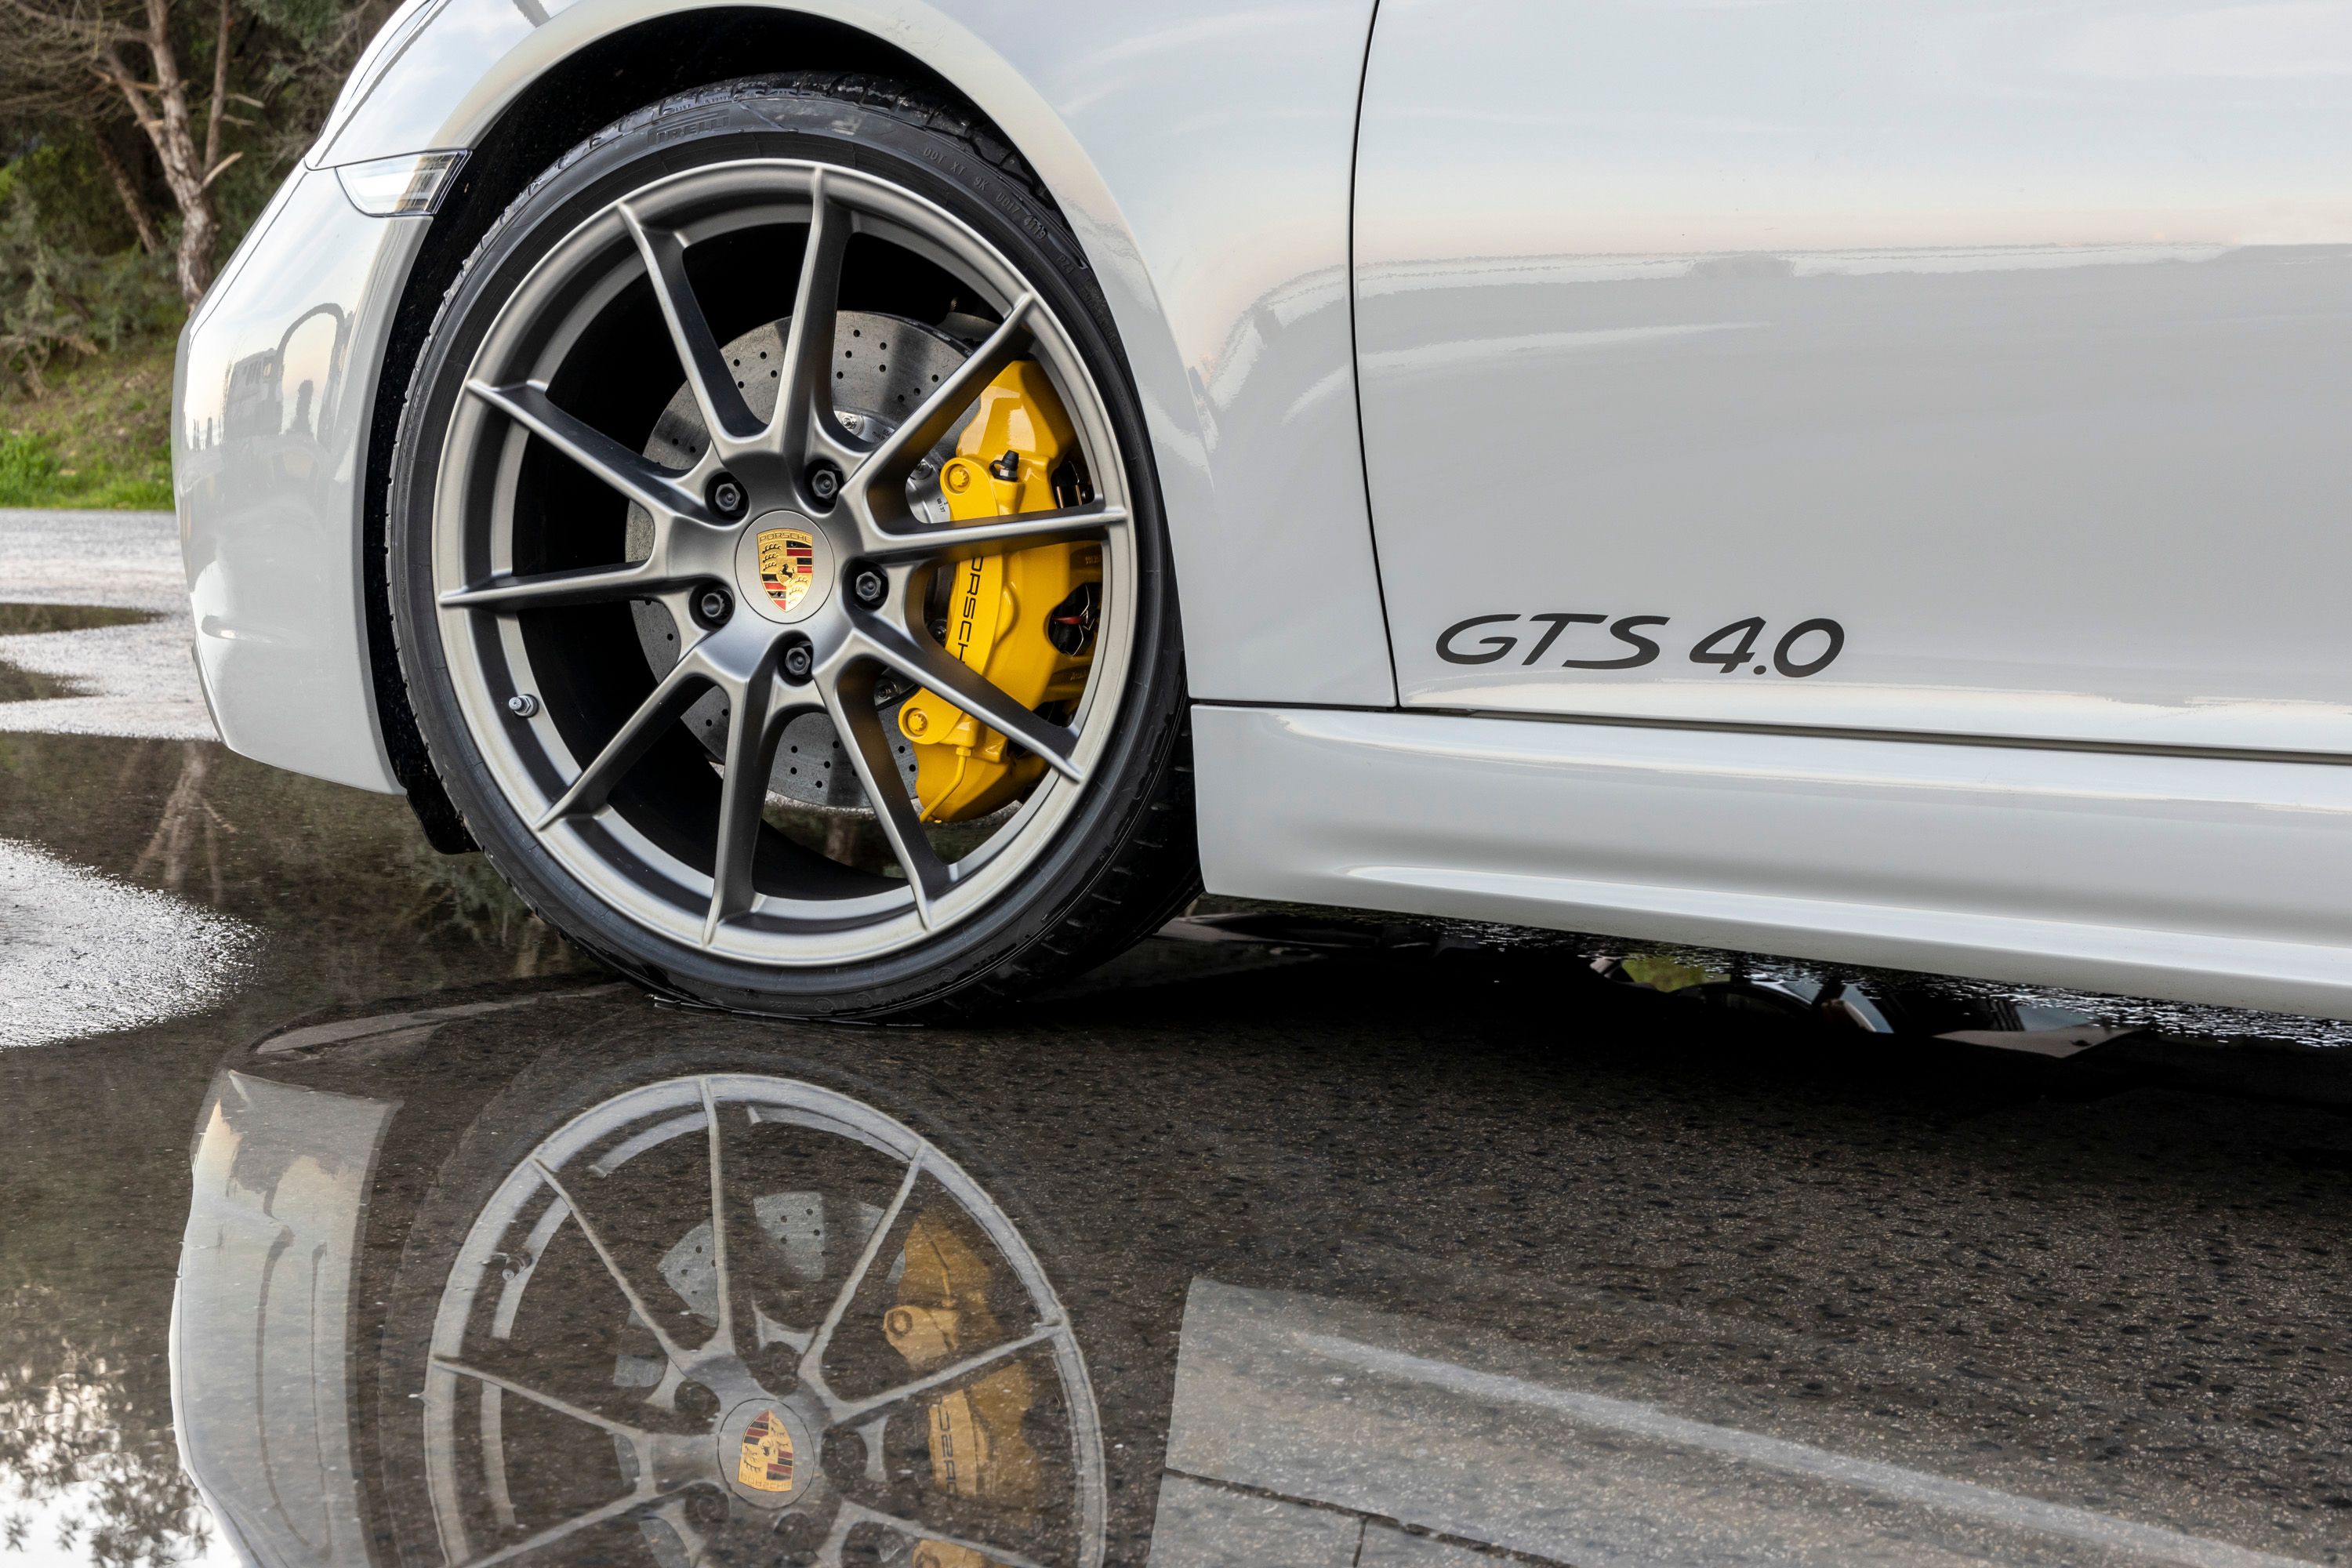 2021 Porsche 718 Boxster GTS 4.0